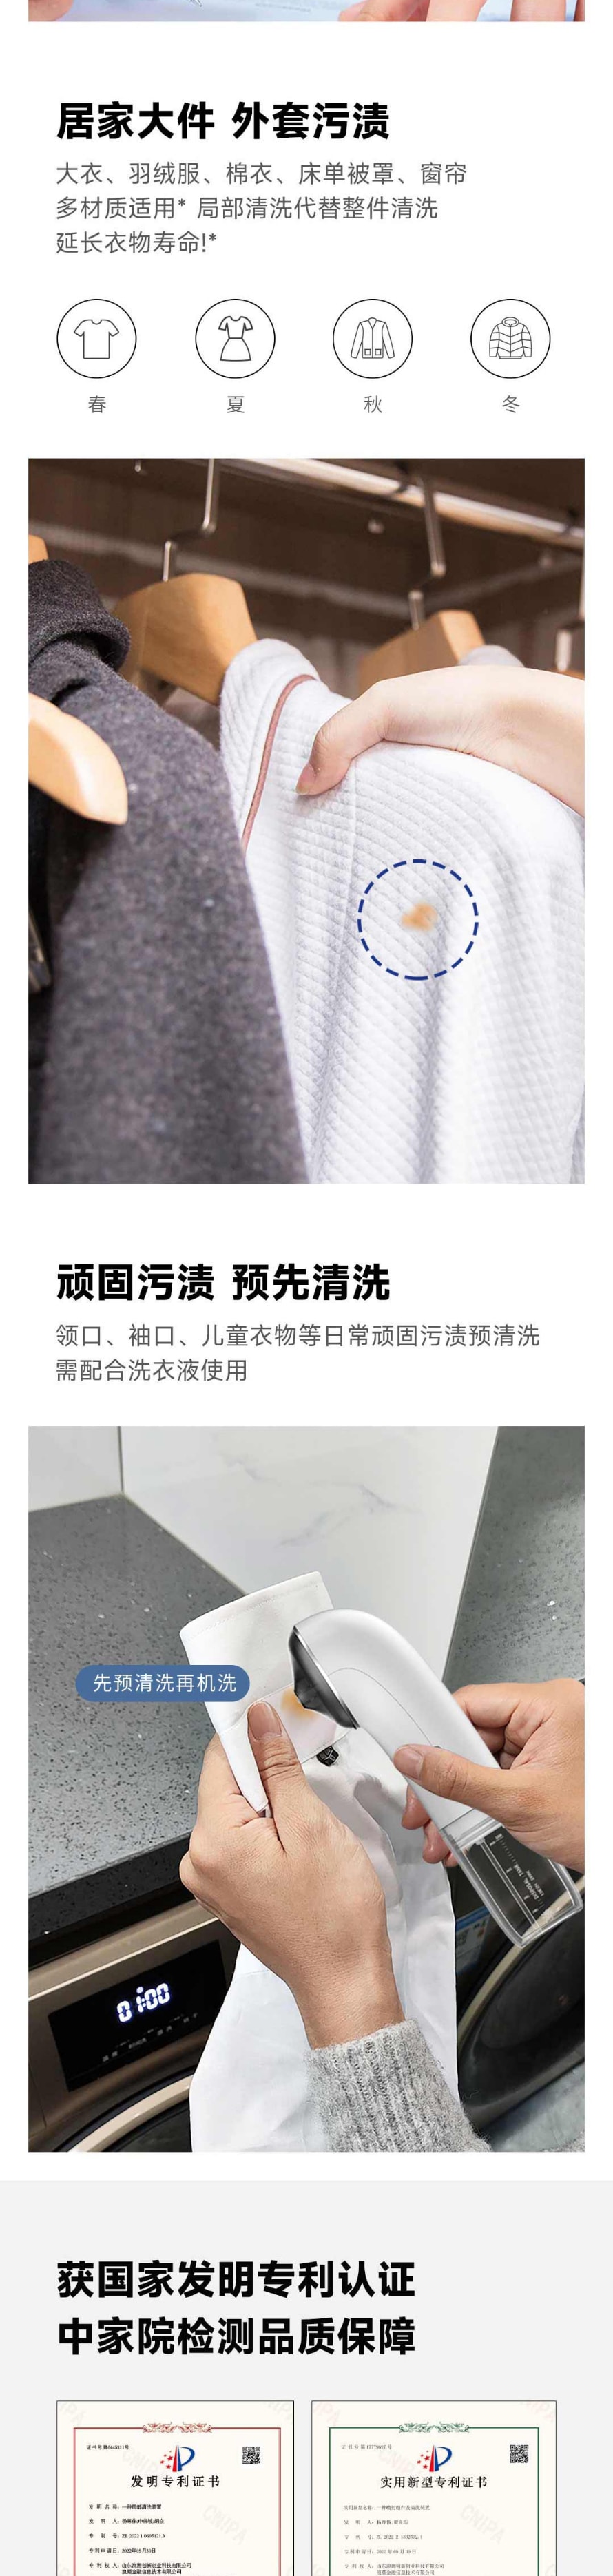 【中国直邮】小米有品 维可丽便携式超声波清洁仪 手持超声波洗衣机 快速清洁局部污渍 白色